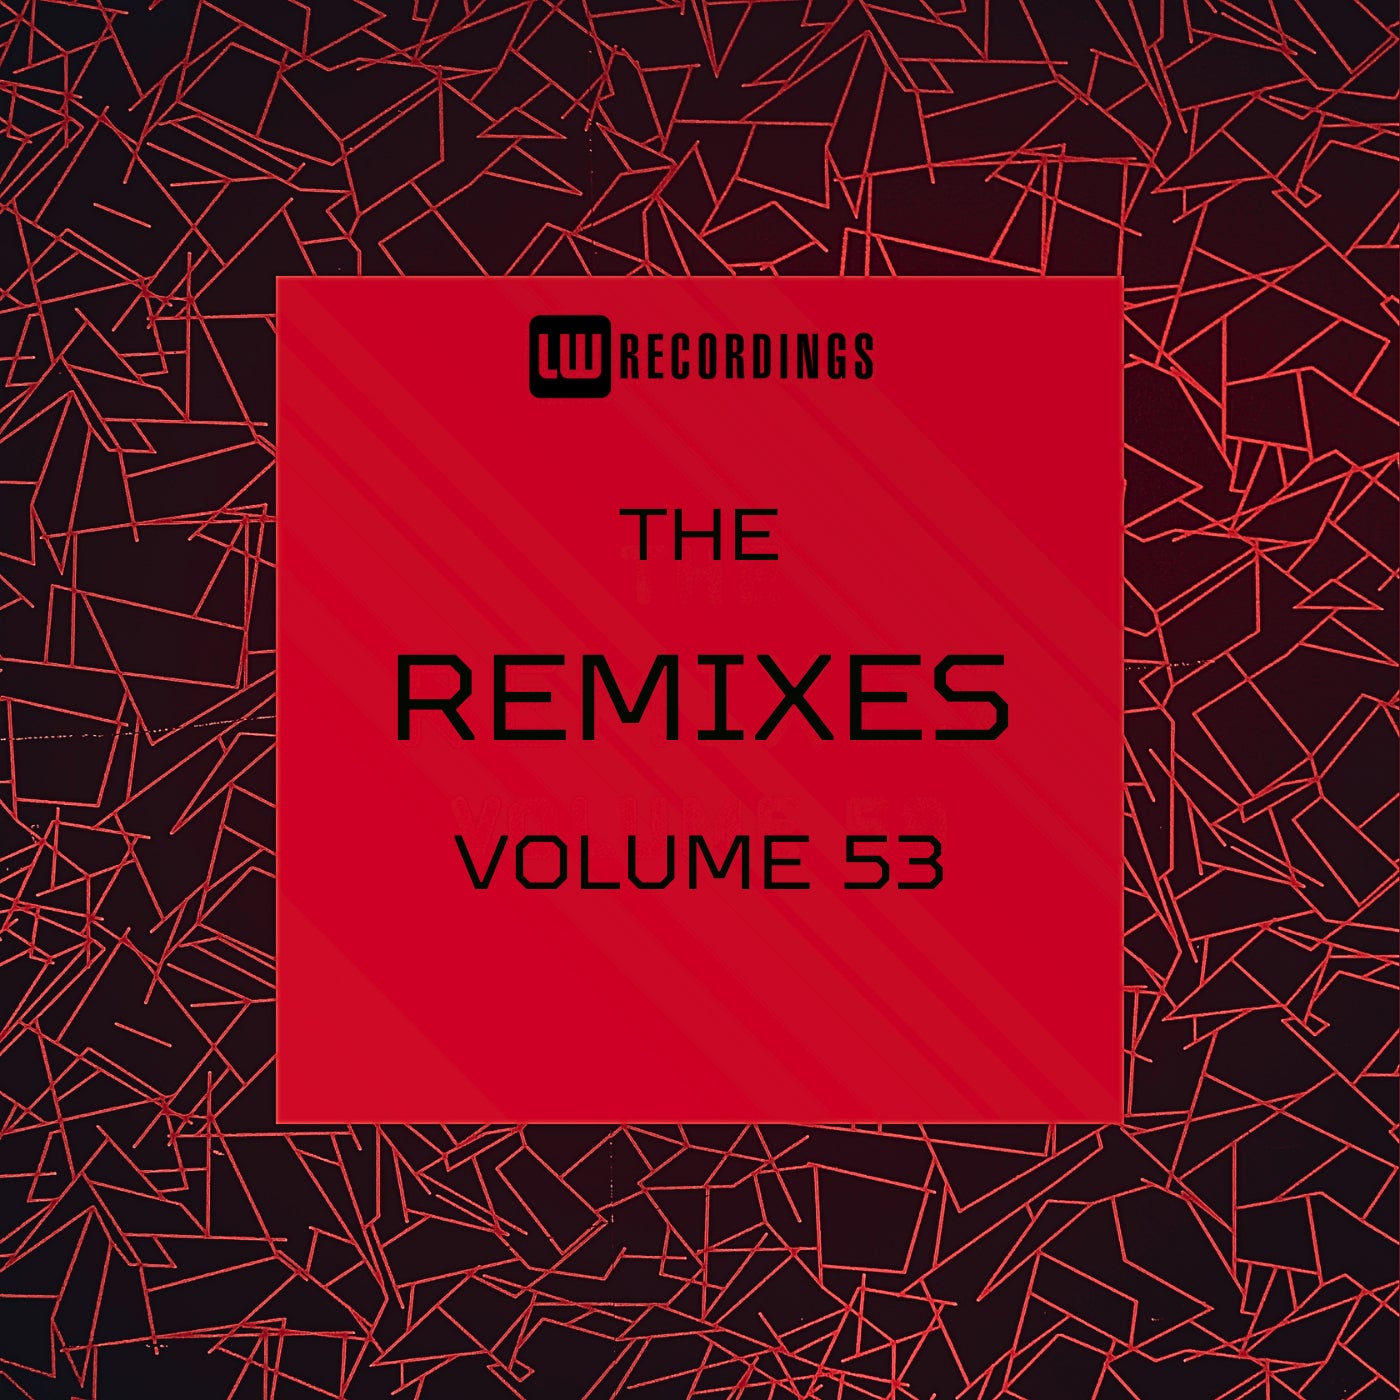 The Remixes, Vol. 53